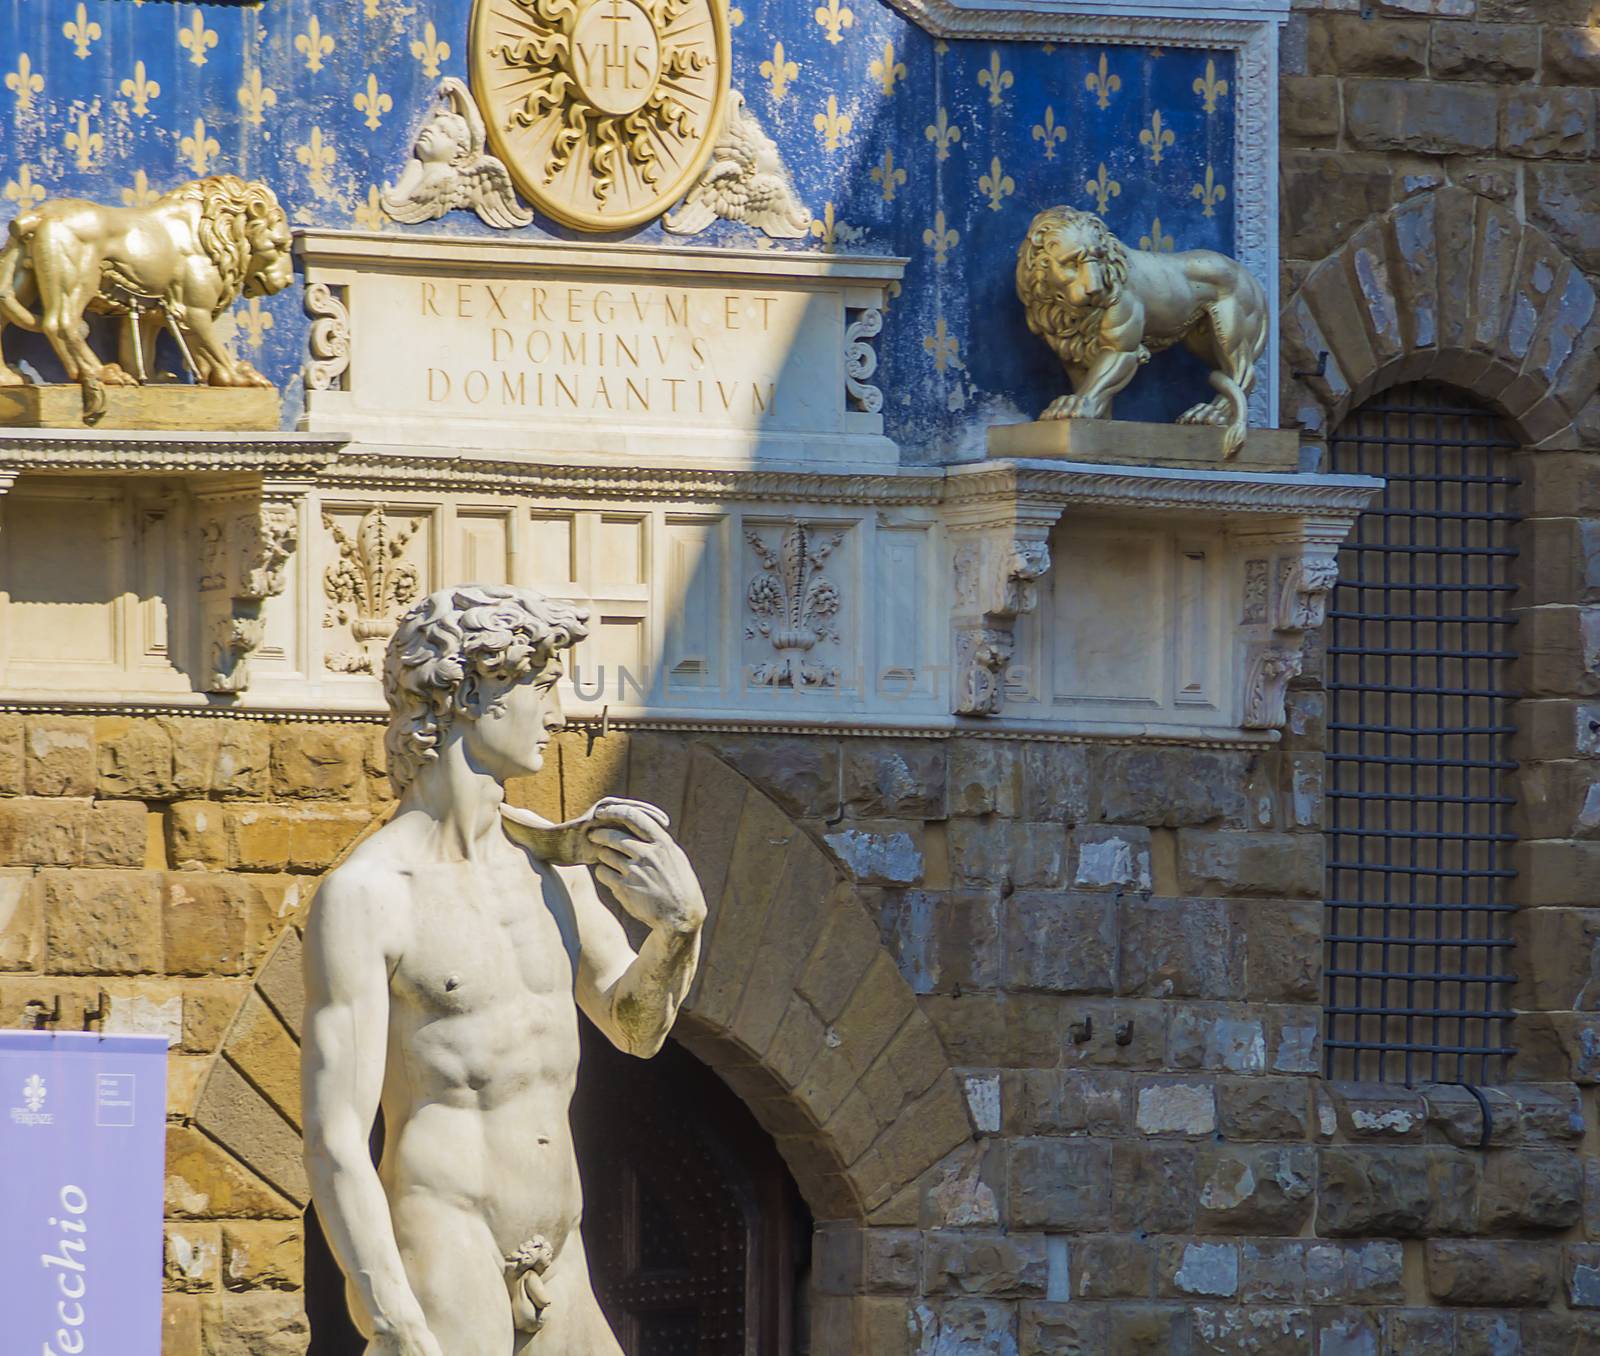 Statue of David in Florence's Piazza della Signoria